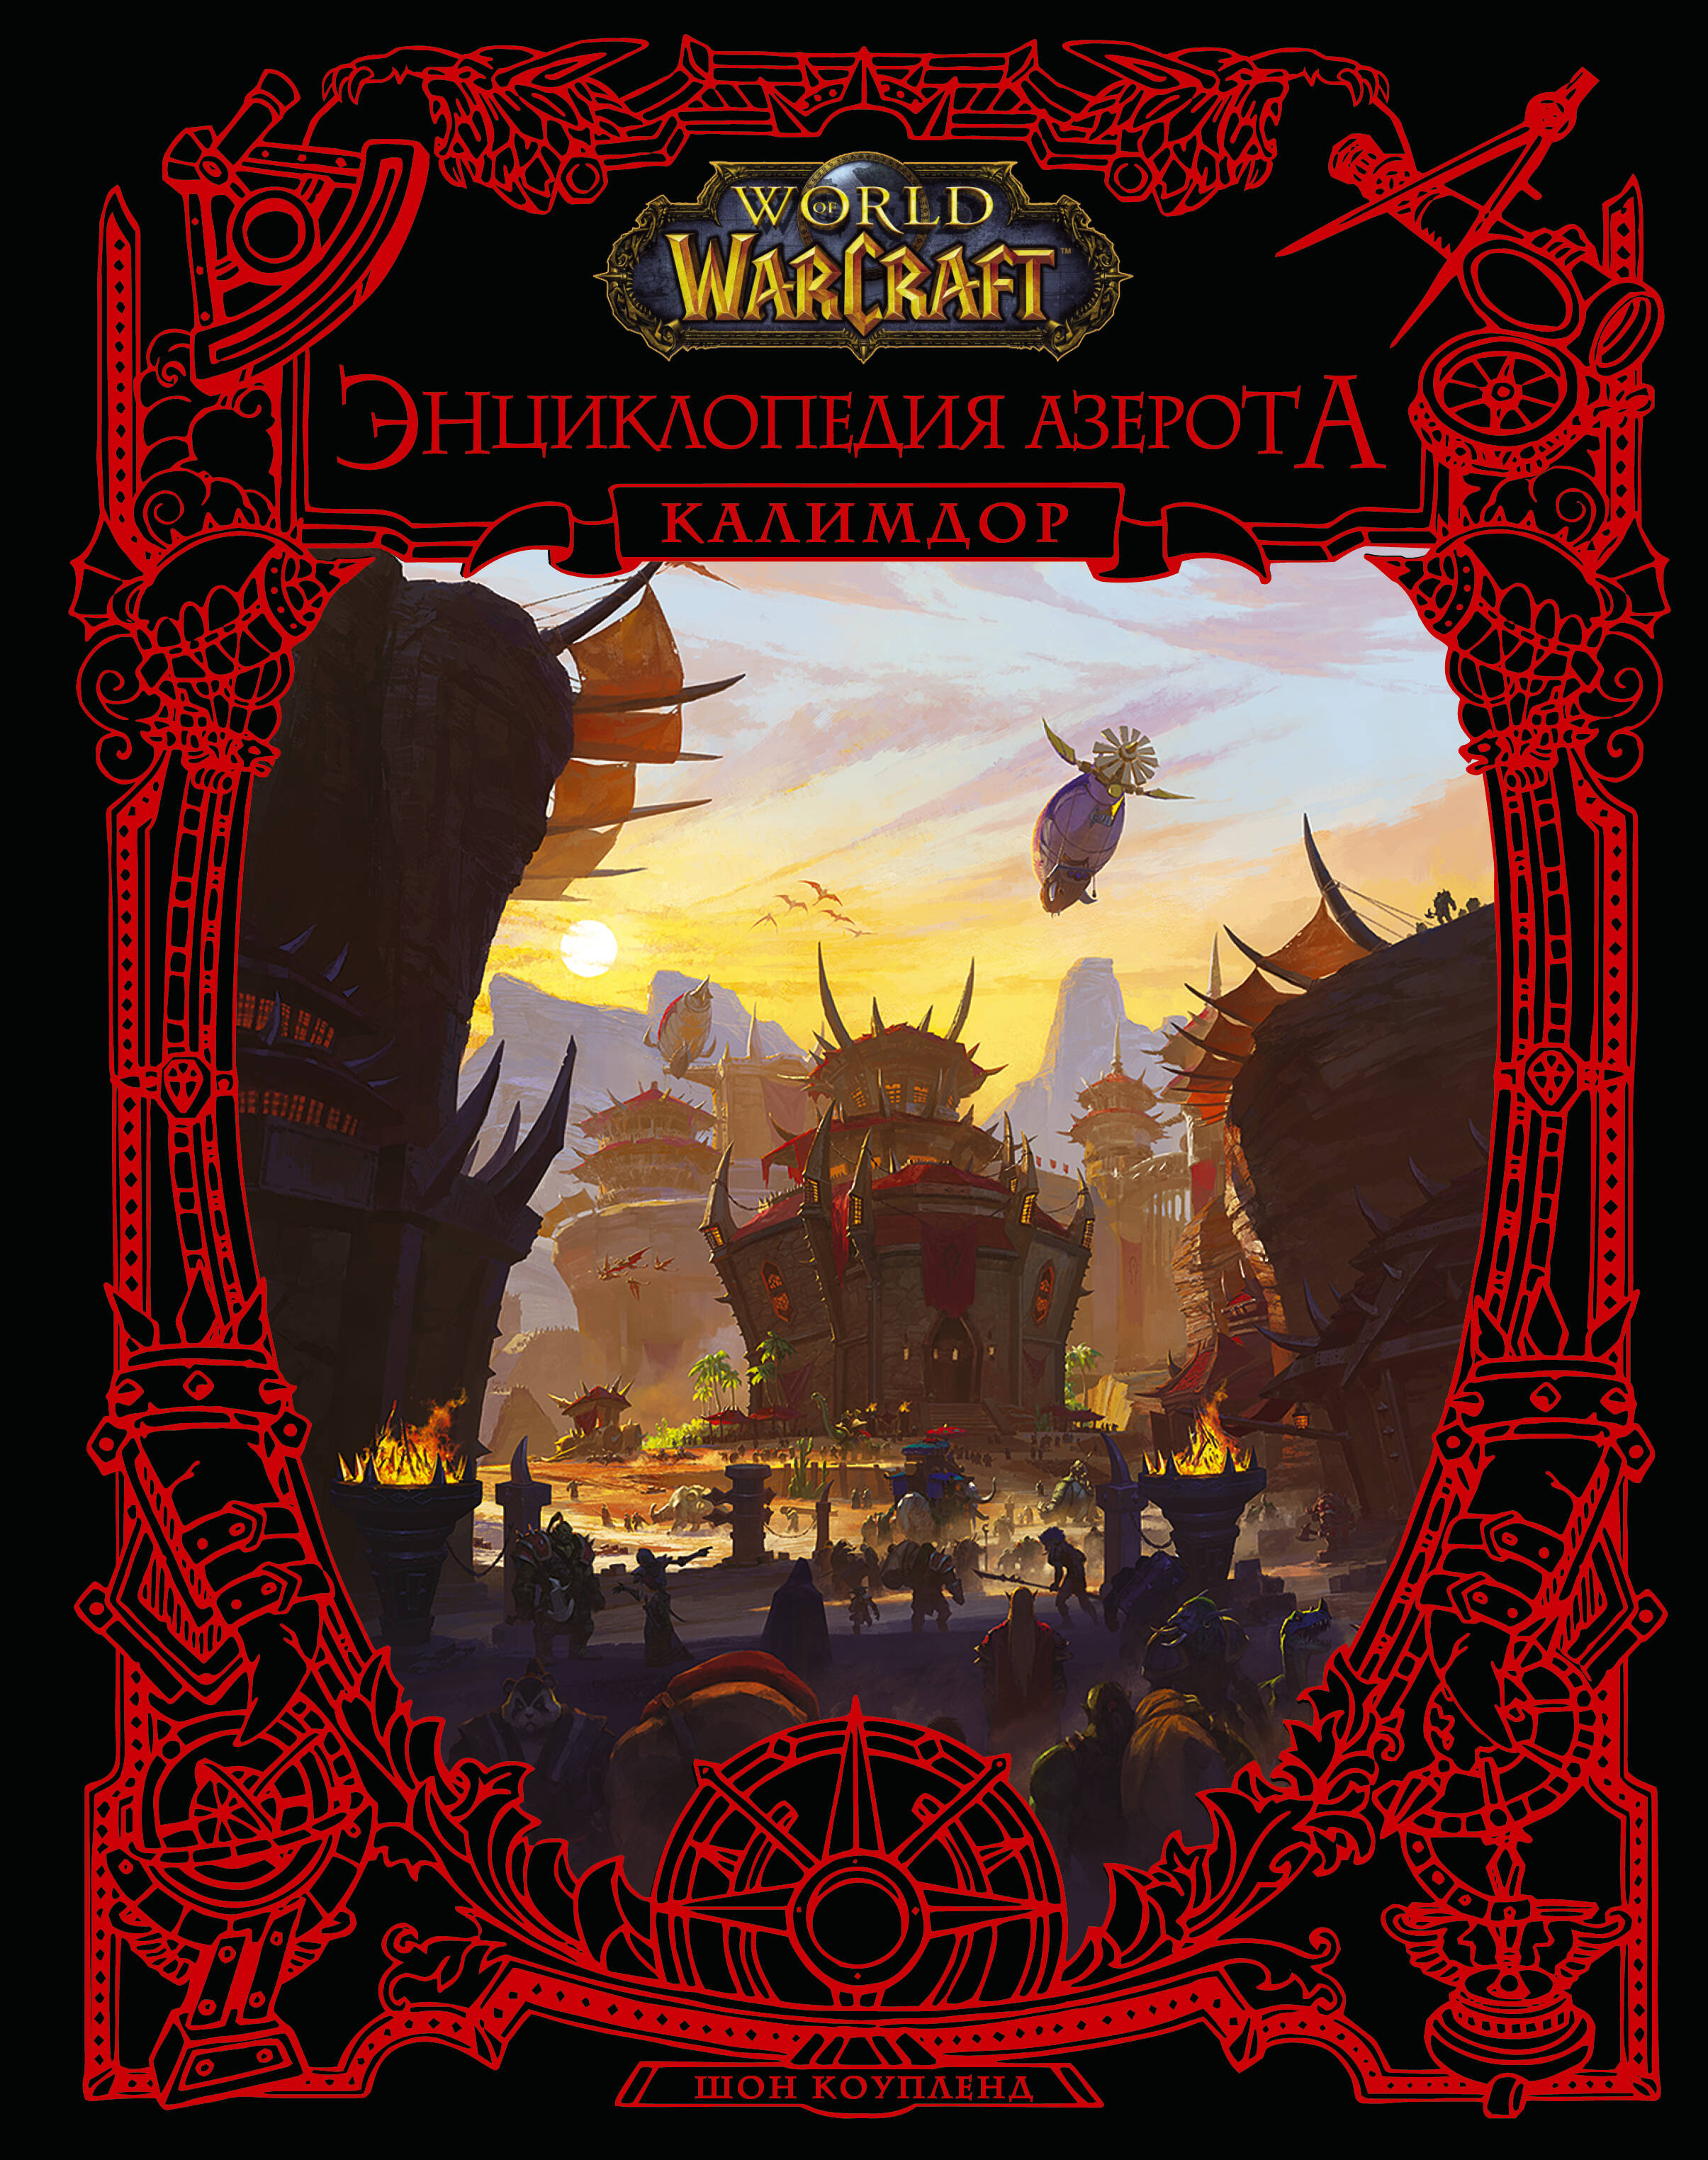 Коупленд Шон World of WarCraft. Энциклопедия Азерота: Калимдор фигурка blizzard world of warcraft illidan